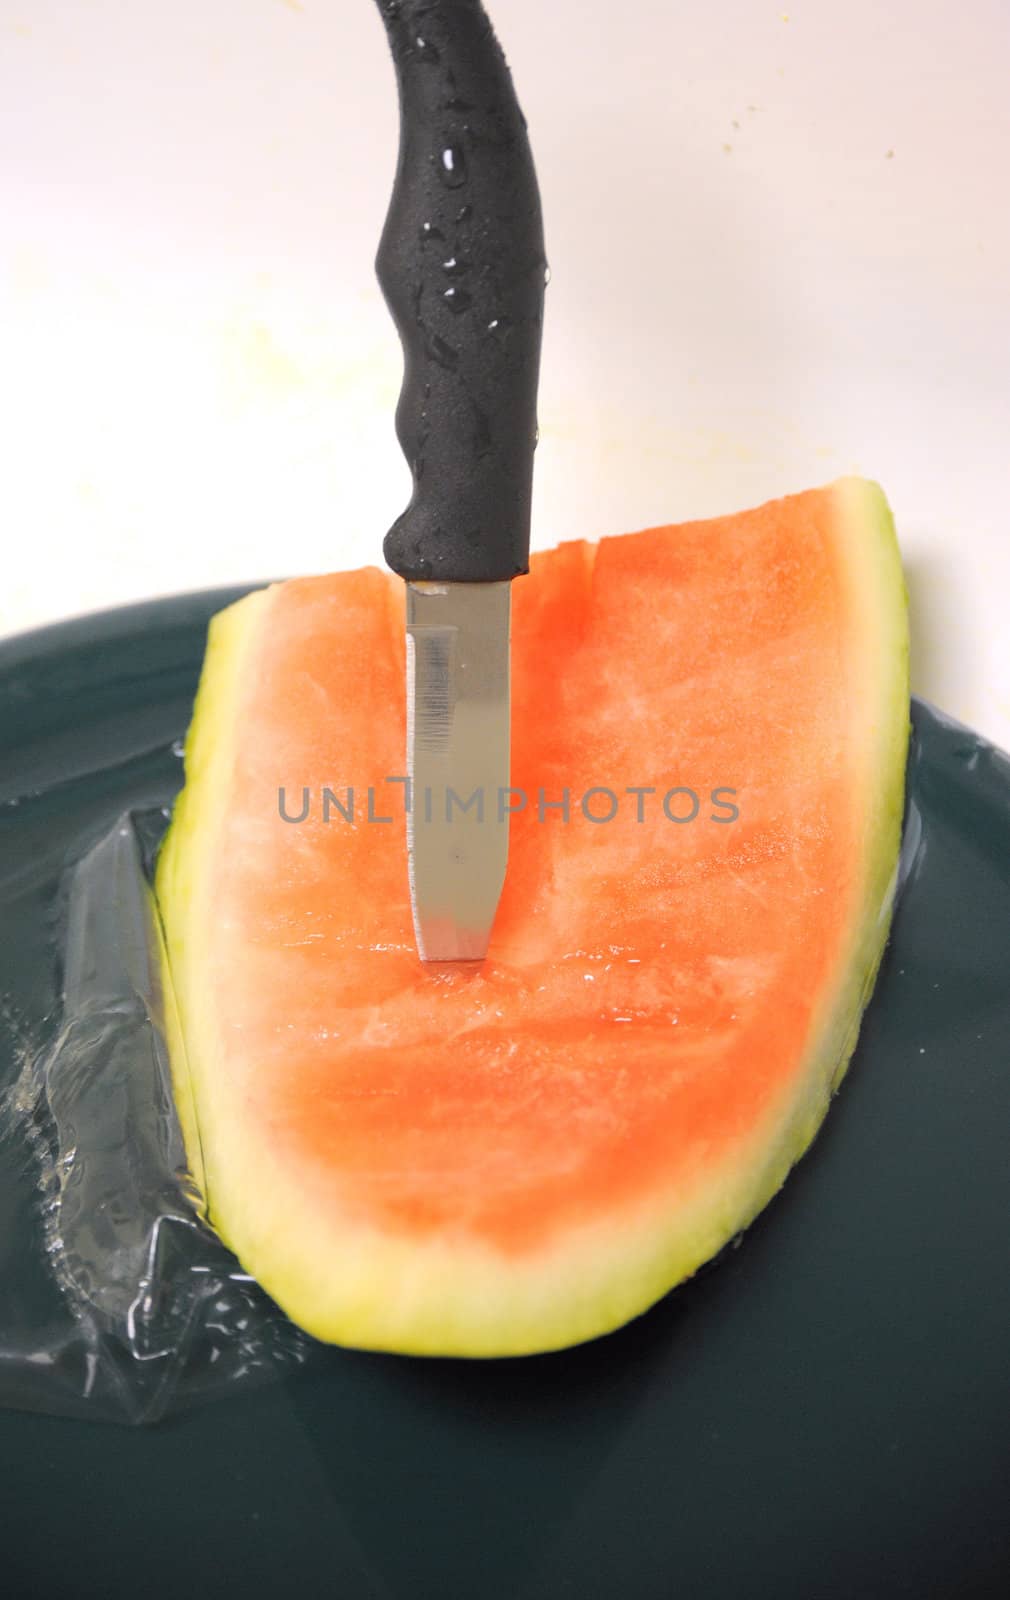 Watermelon by oscarcwilliams